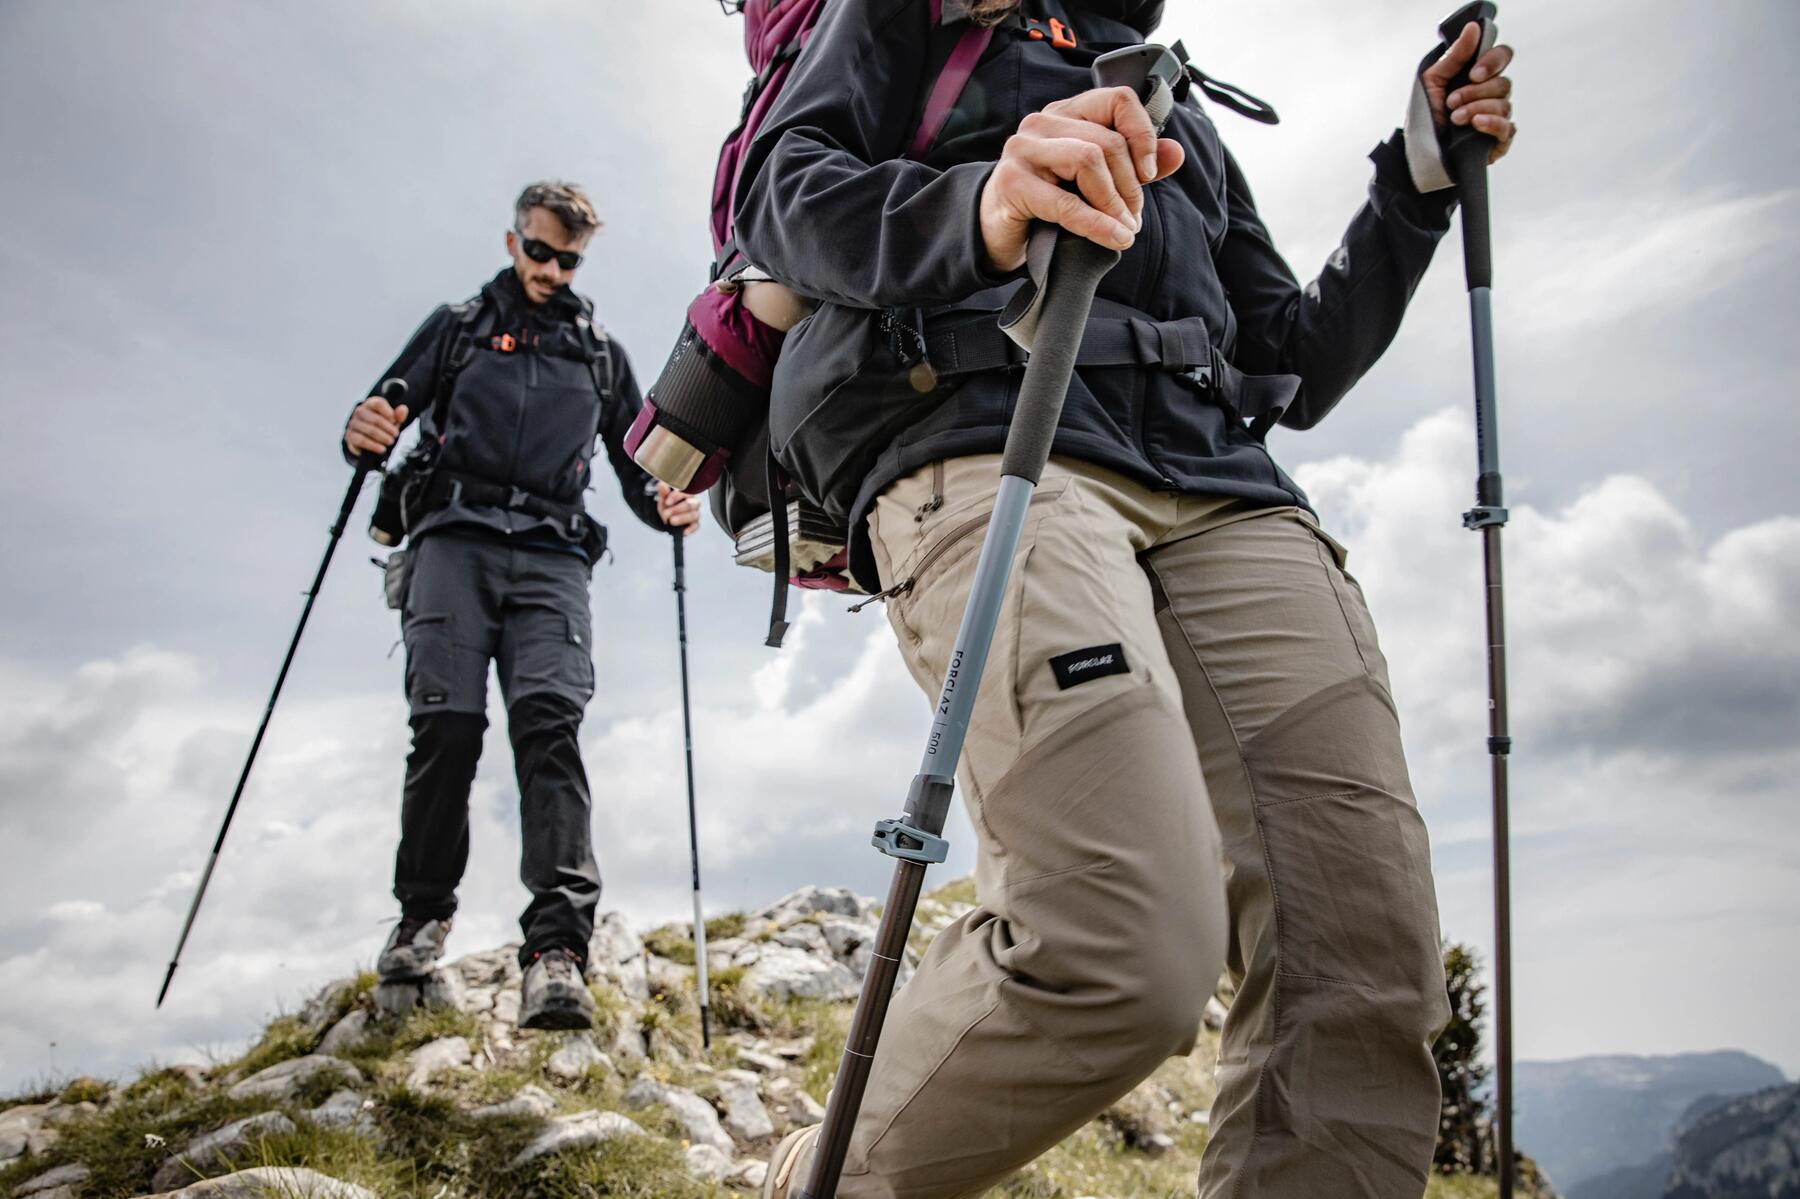 osoby wędrujące po górach  z plecakami turystycznymi na plecach trzymając za rękojeść kijki trekkingowe